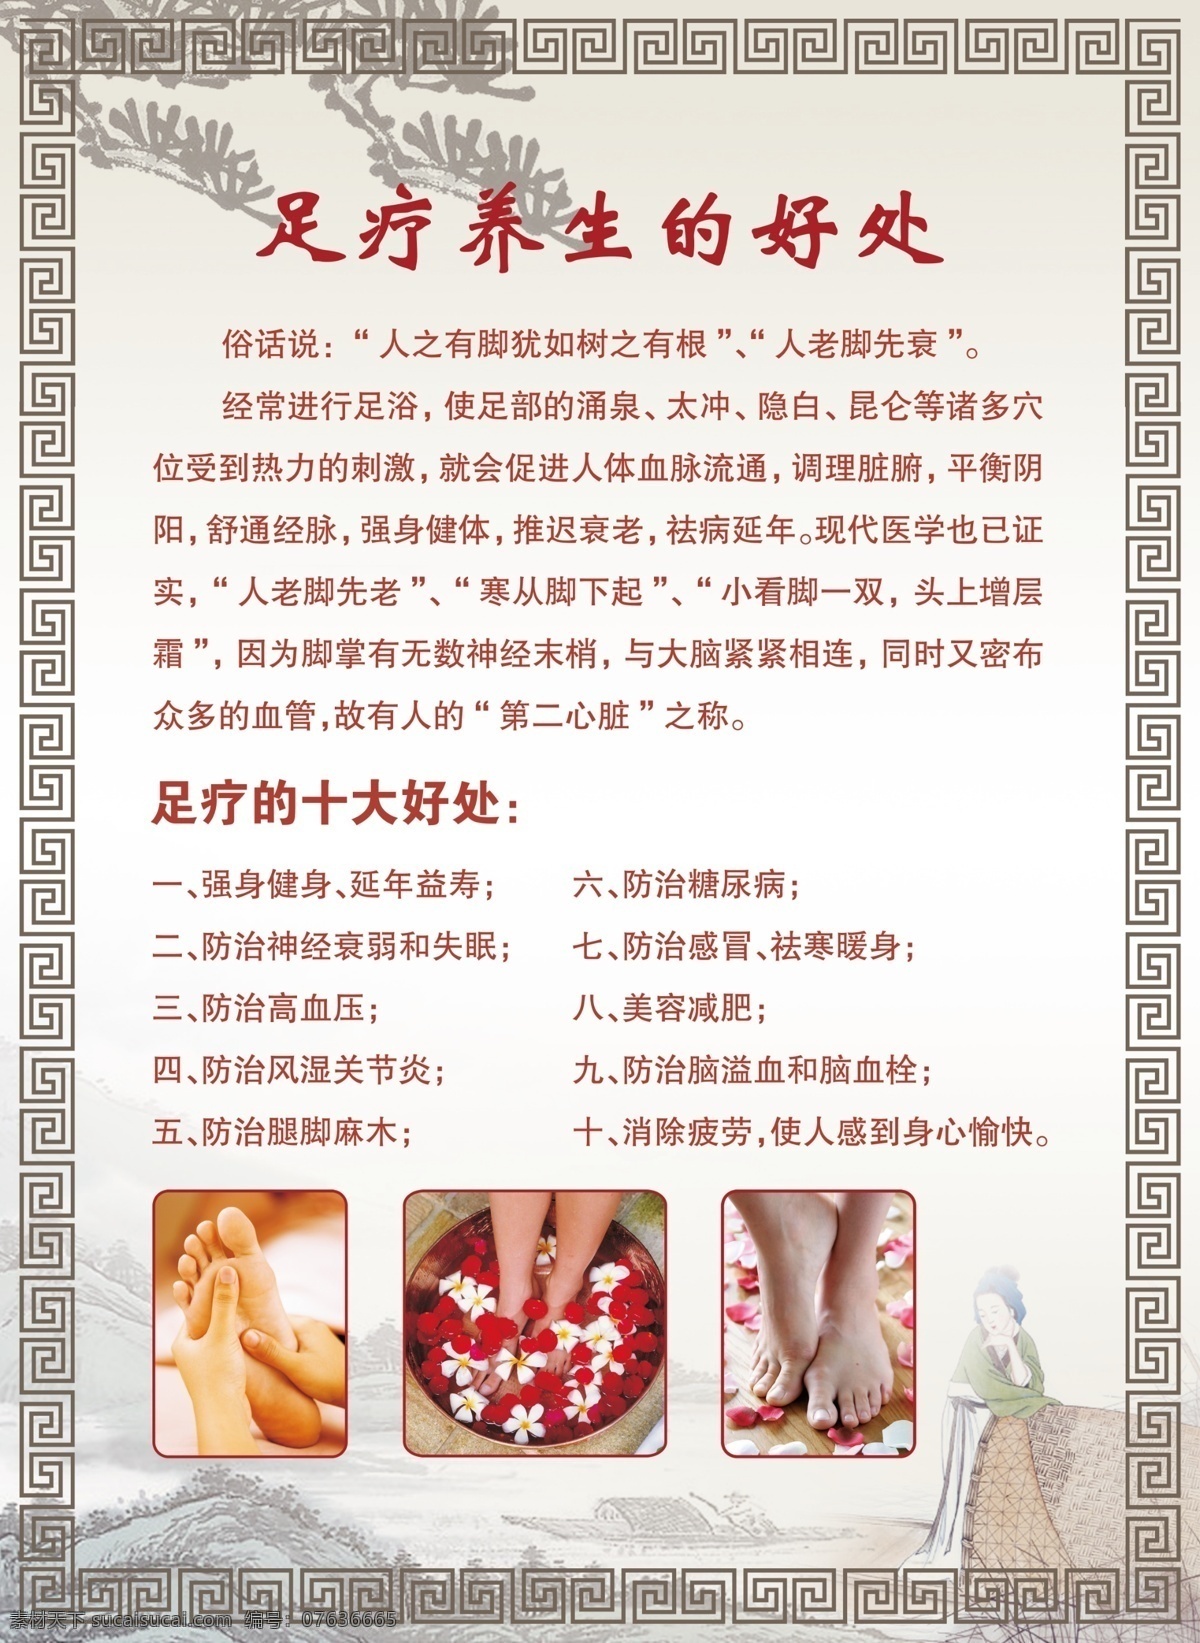 足疗 养生 好处 足疗文化 足疗介绍 中国风 怀旧 古典 广告设计模板 源文件